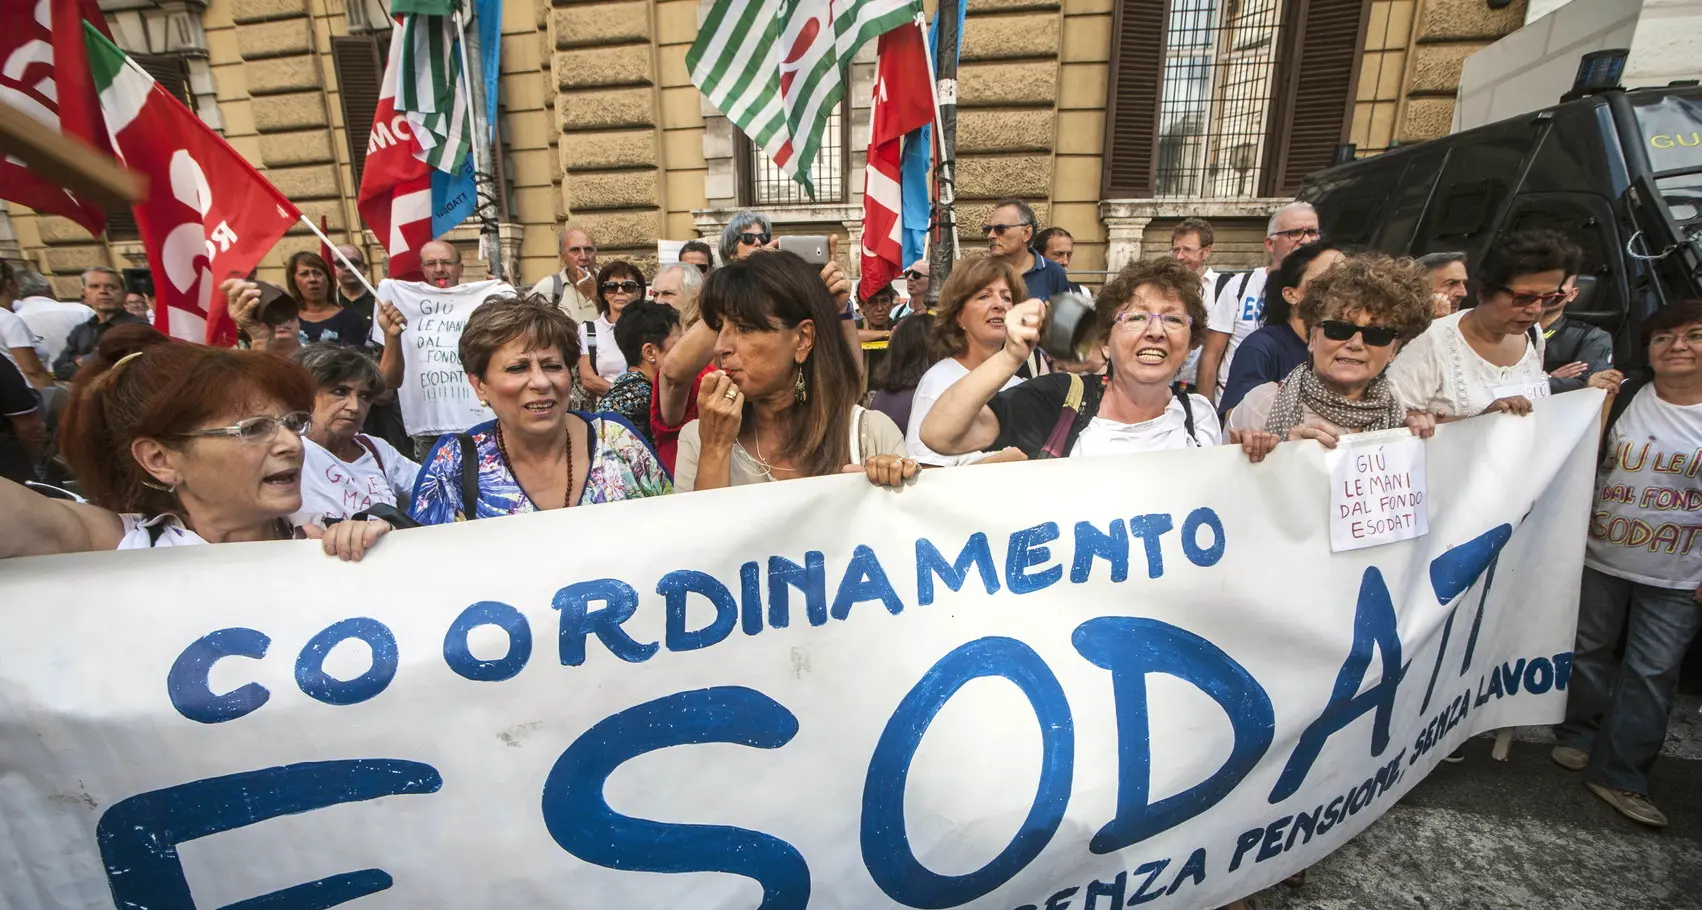 Presidi in tutta Italia contro la riforma Fornero